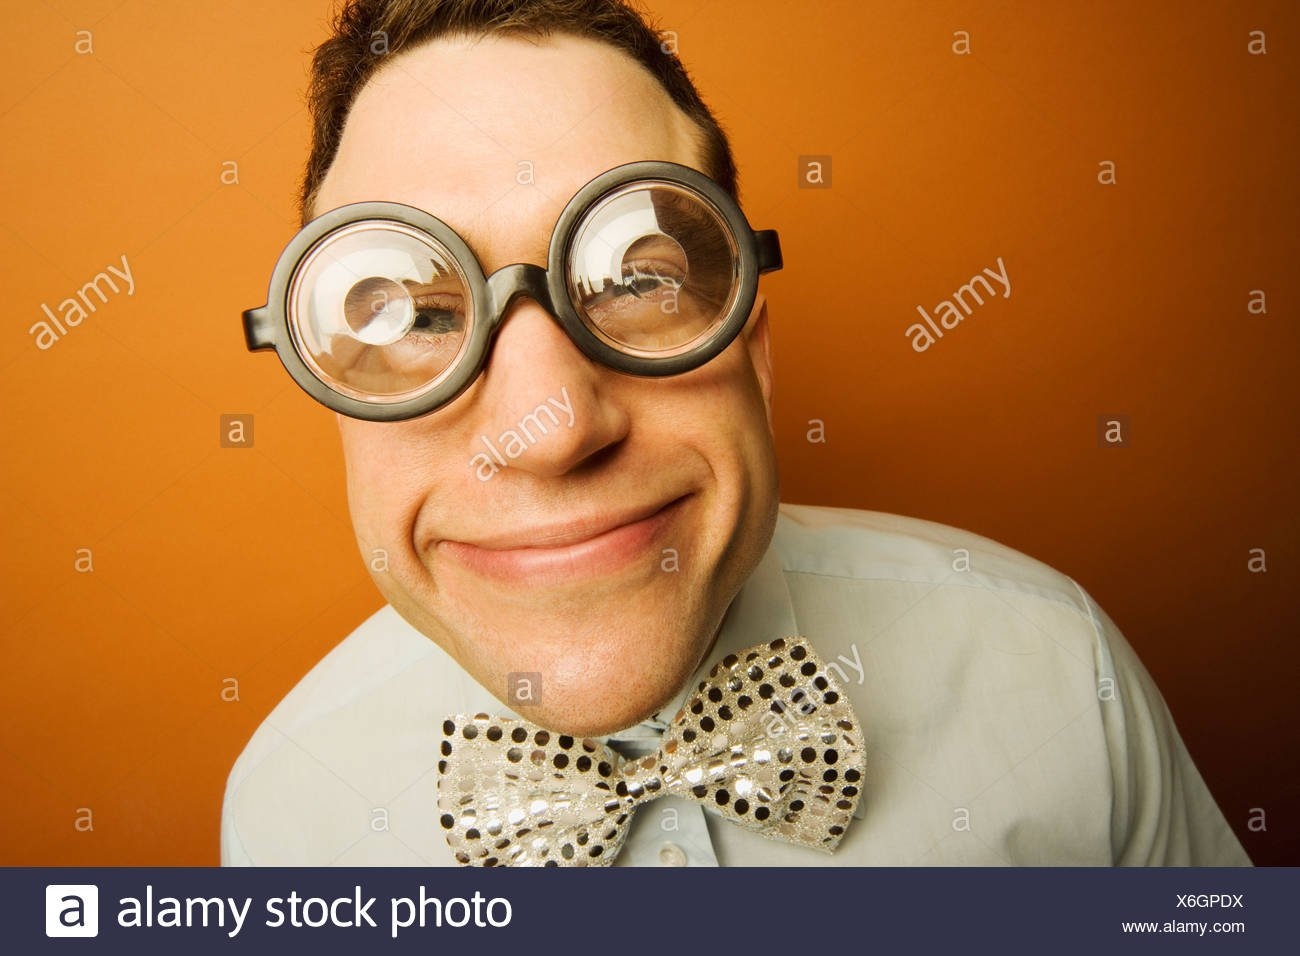 День плохого зрения. Смешной парень в очках. Человек в больших очках. Смешные люди в очках. Прикольные очки.